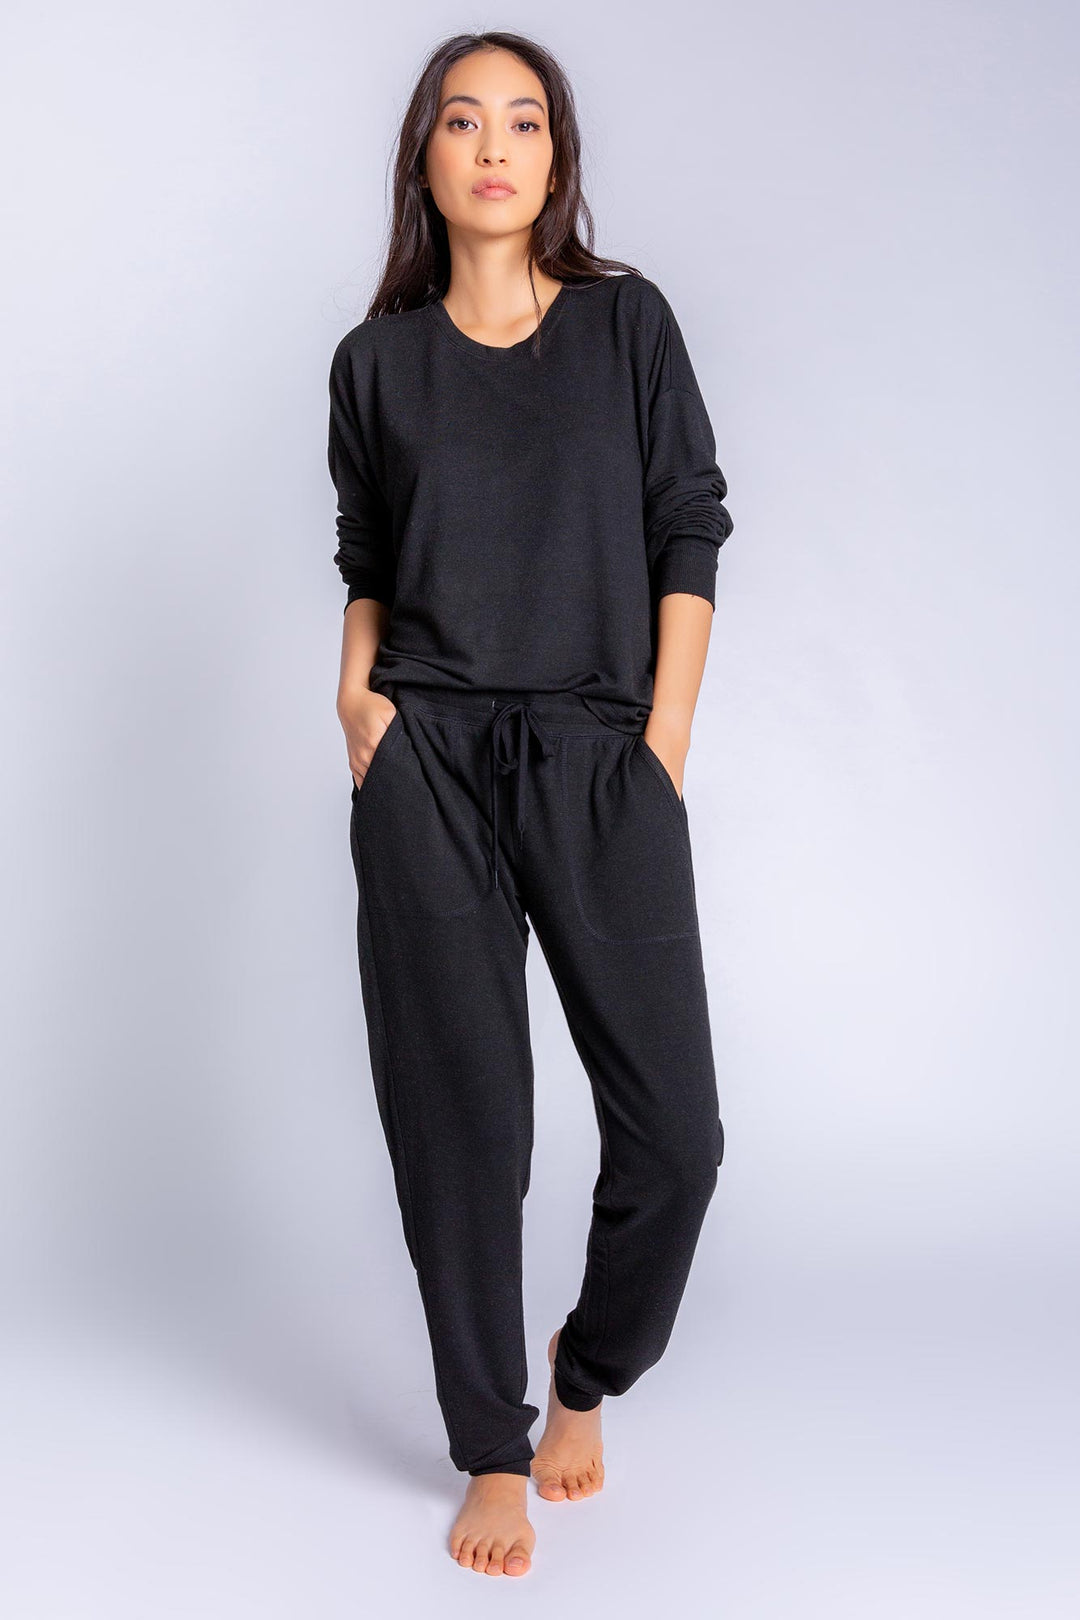 Women's Pajama Essentials Crew Shirt& Pants Set Black – P.J. Salvage